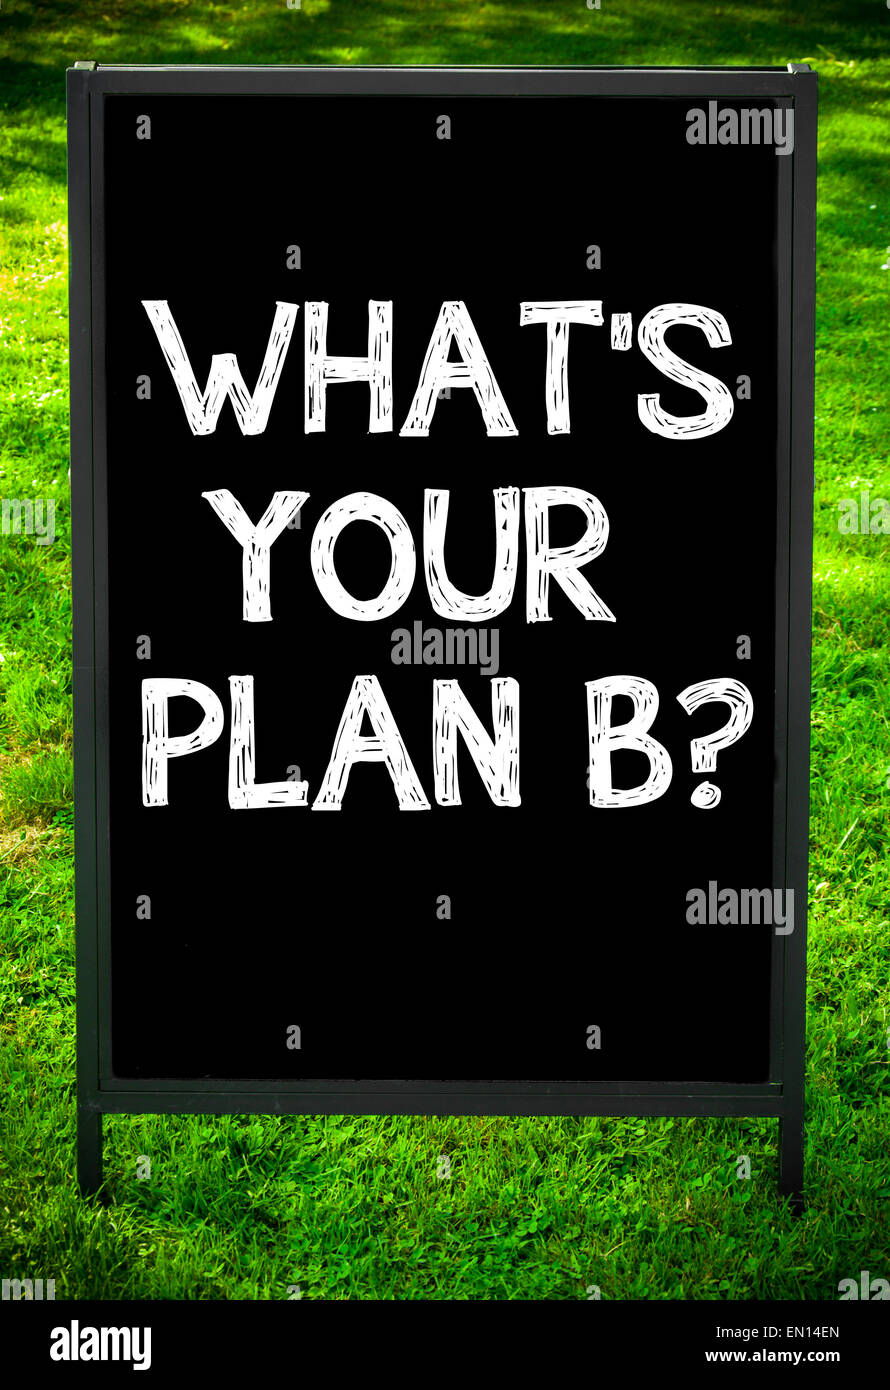 plan b logo wallpaper